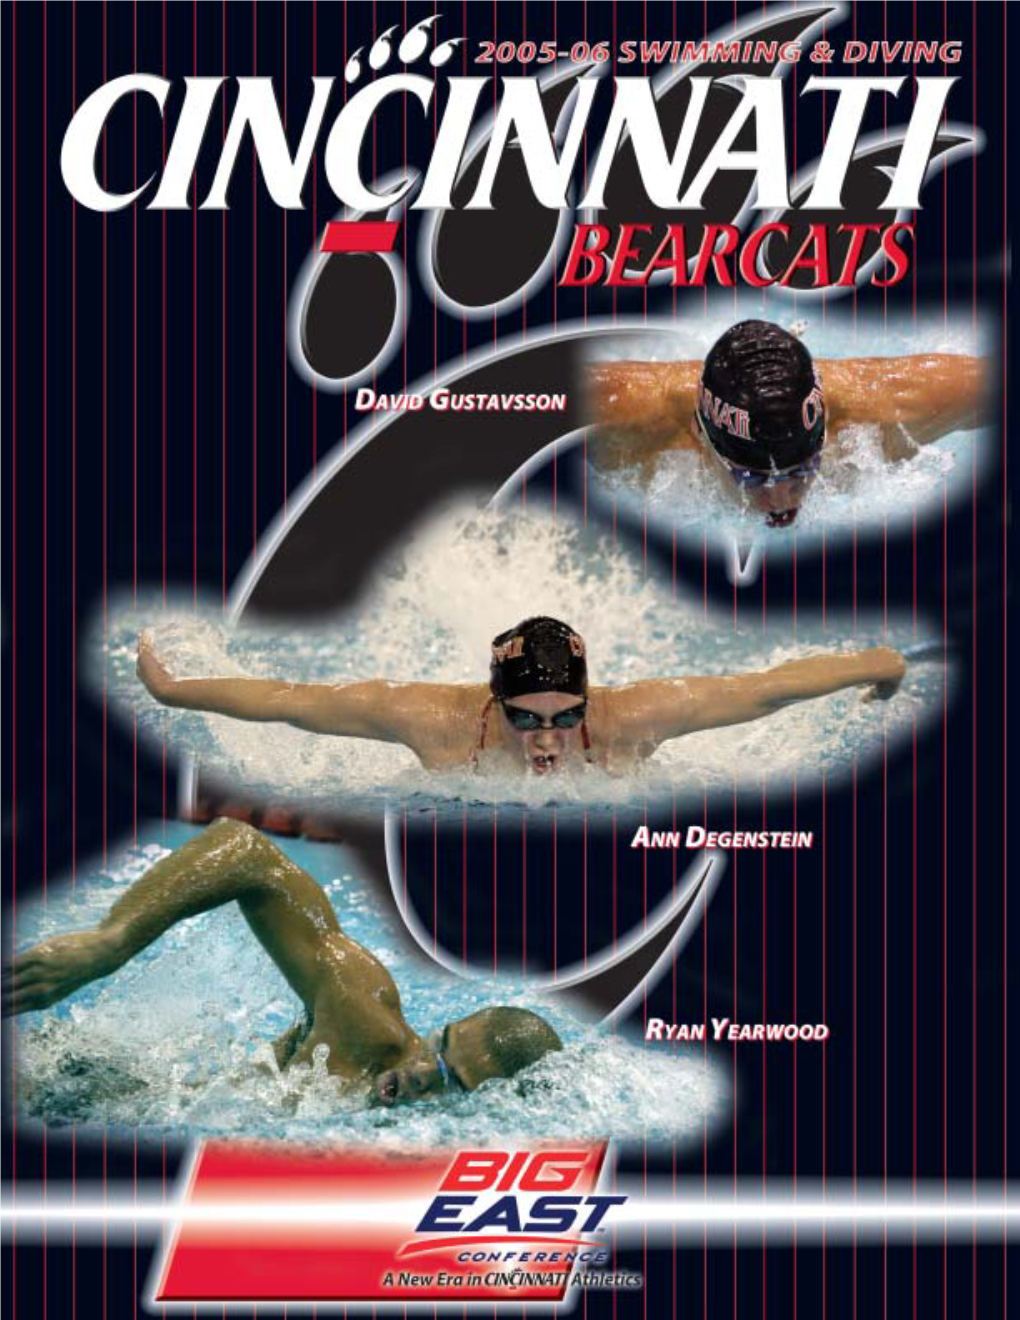 2005-06 Cincinnati Swimming & Diving Teams